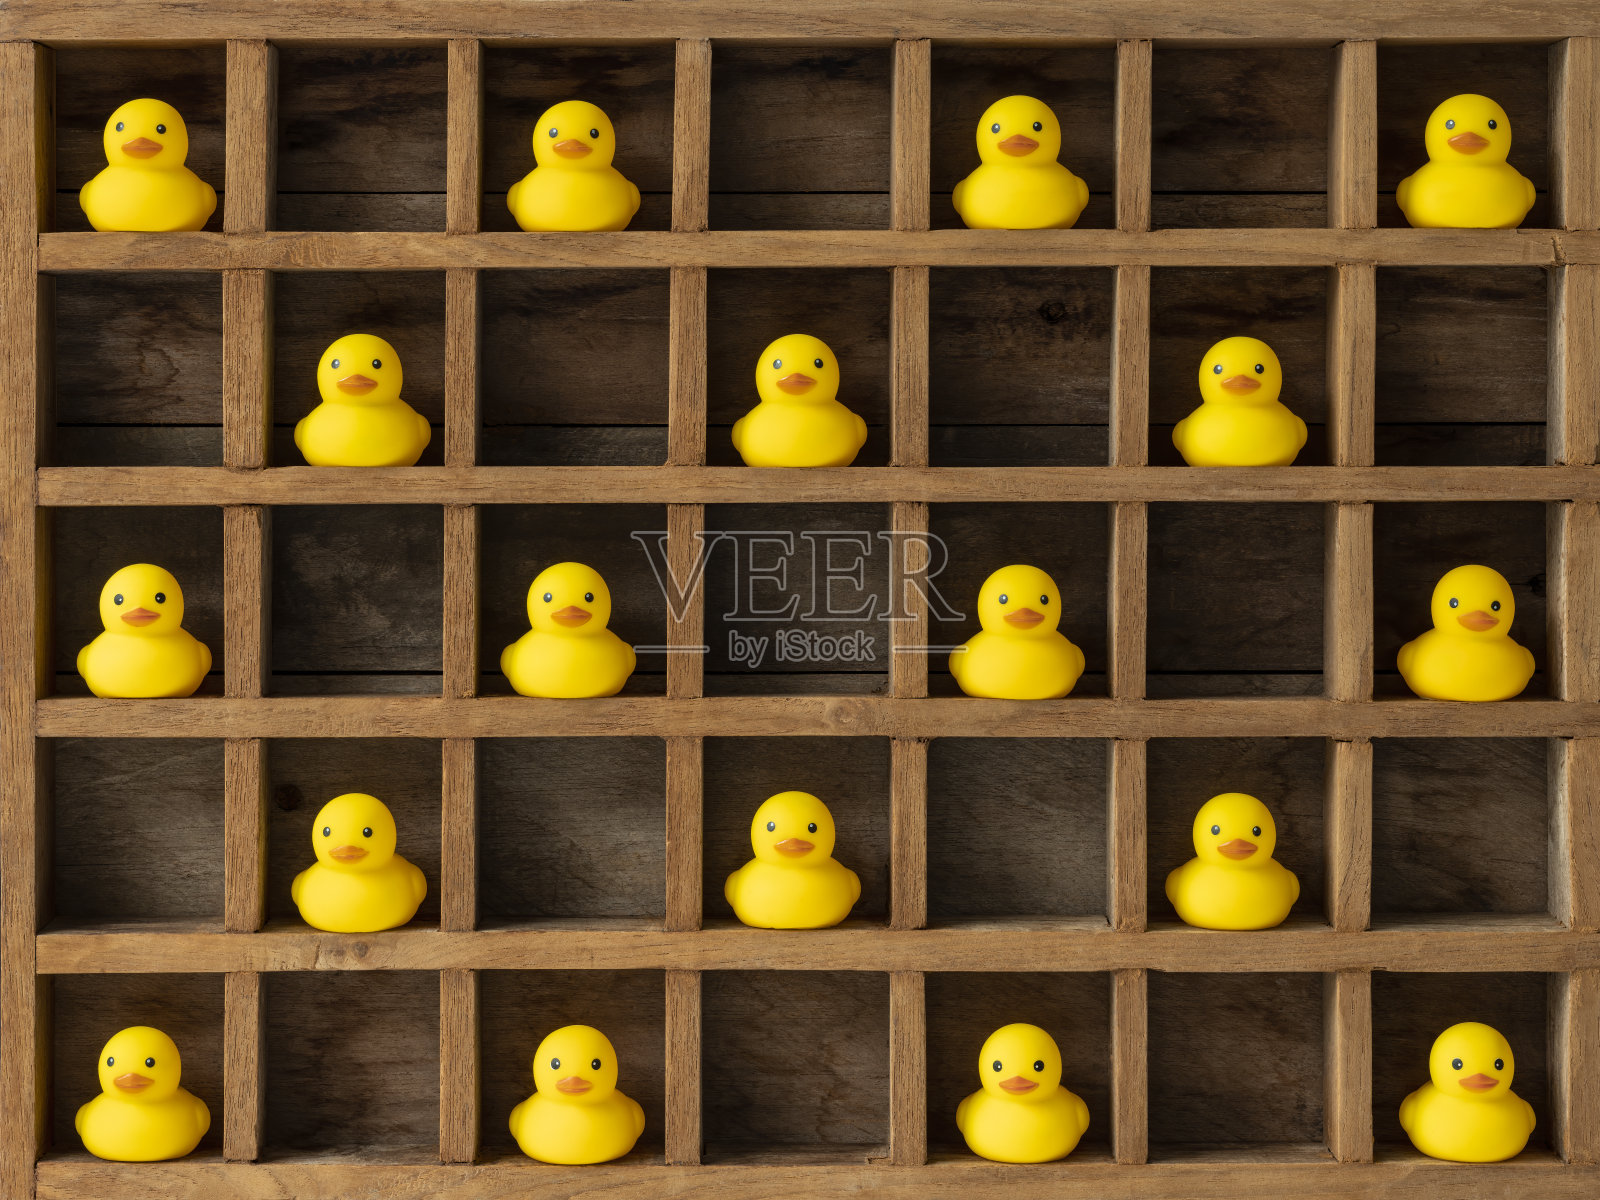 许多单独的黄色橡皮鸭被关在木制的隔间或鸽子洞里，用一个空洞彼此隔开，仿佛被隔离、封锁或隔离。照片摄影图片